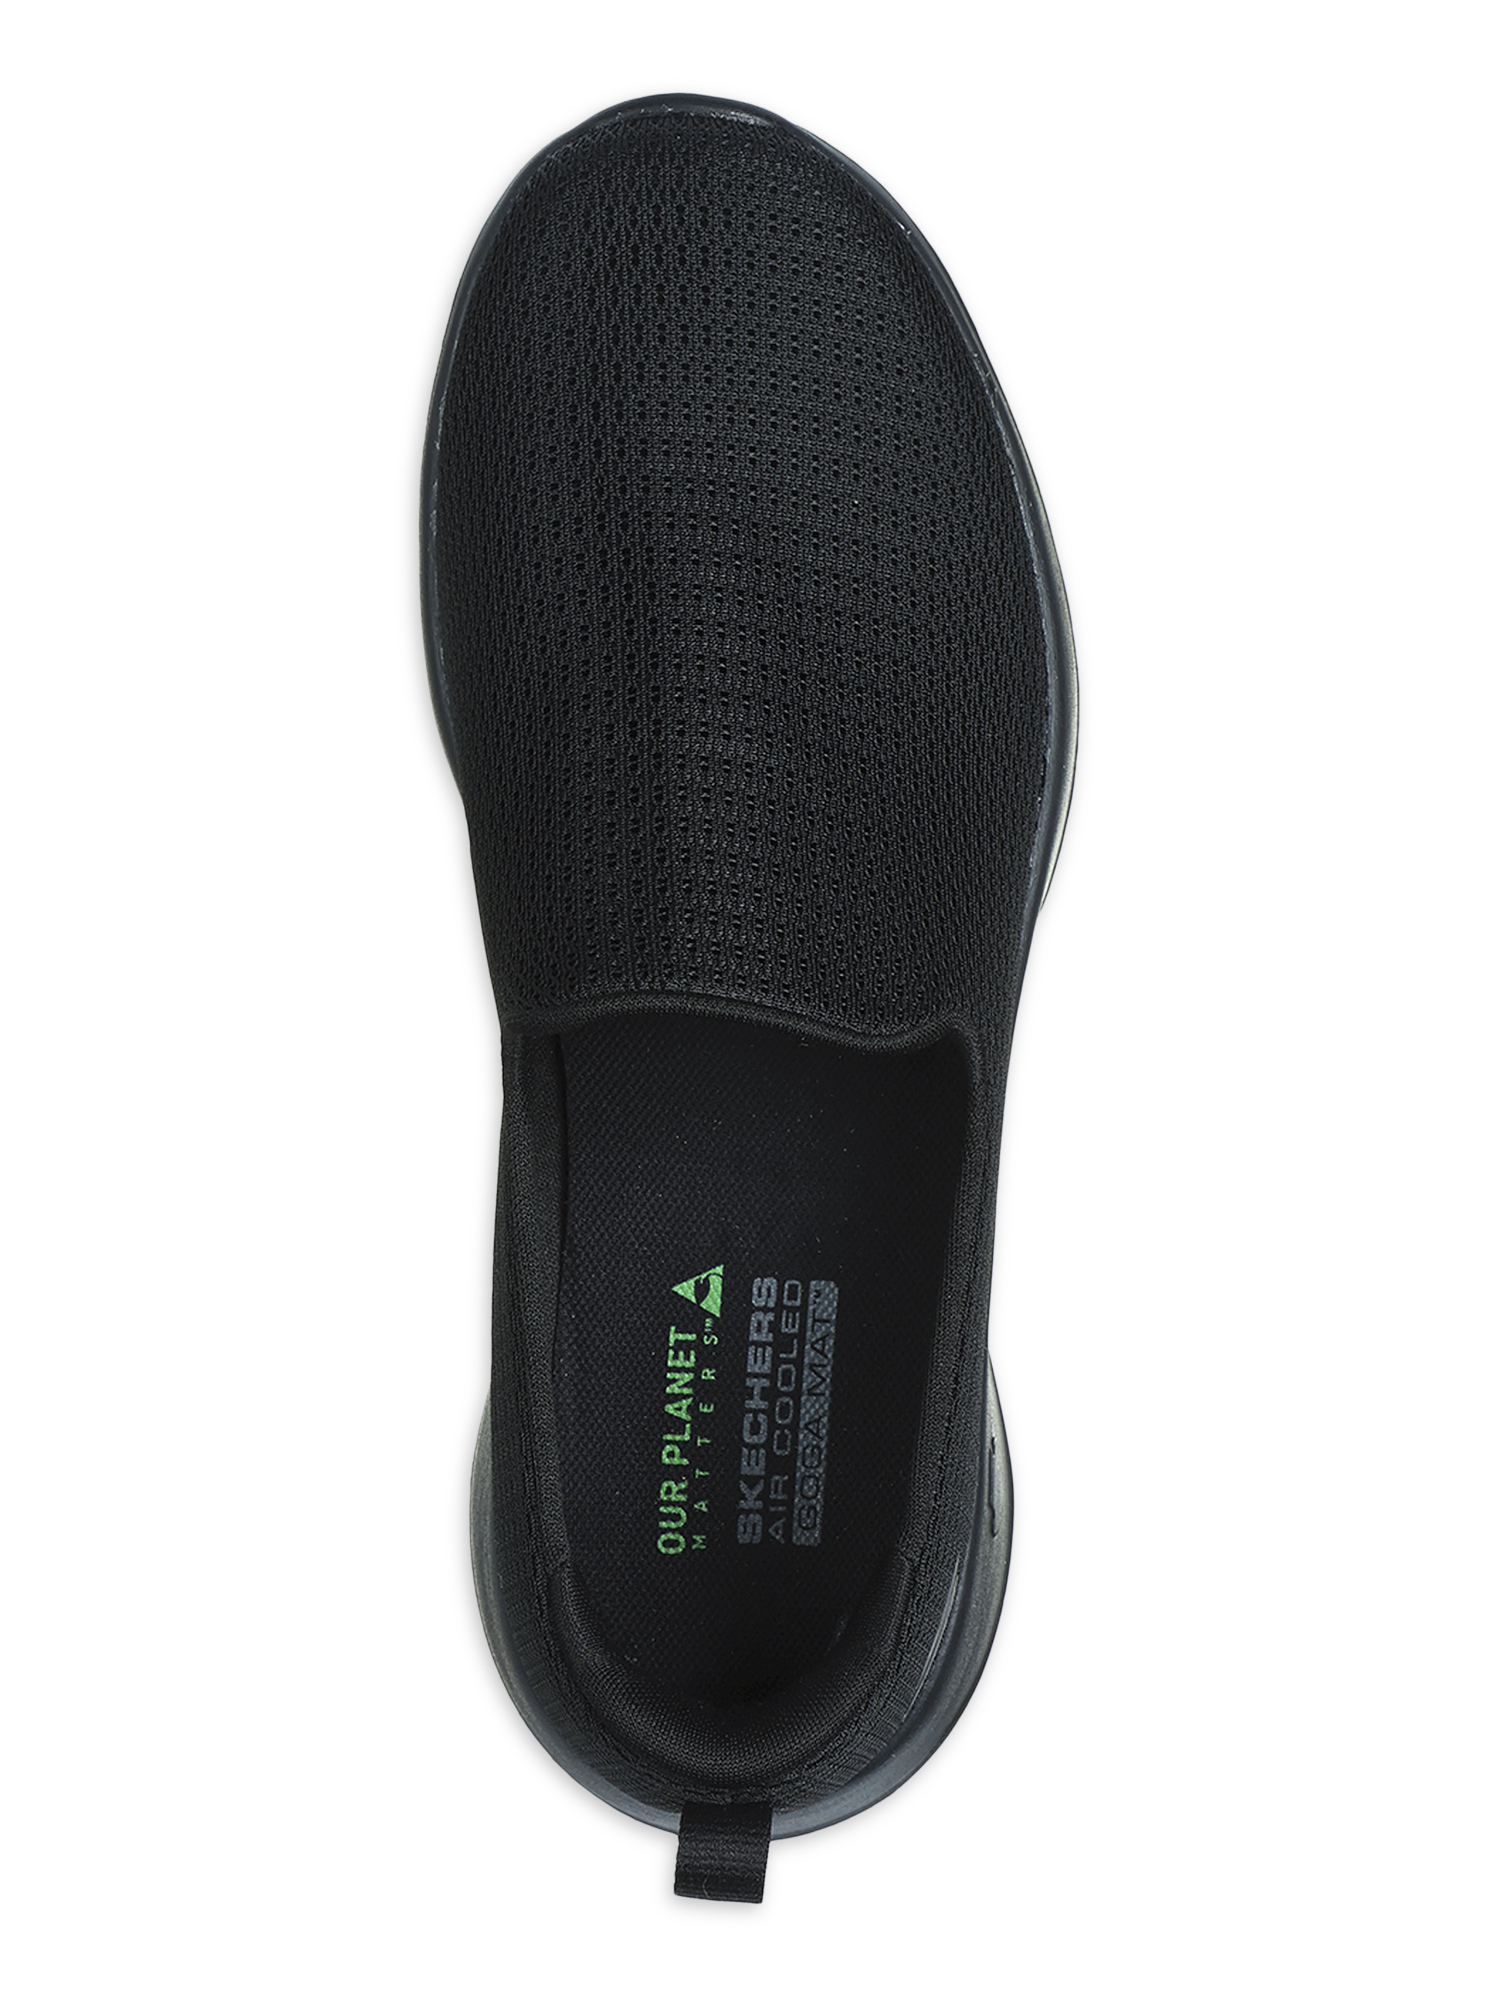 Skechers Women's Gowalk Joy Aurora Slip-on Sneaker, Wide Width Available - image 3 of 5